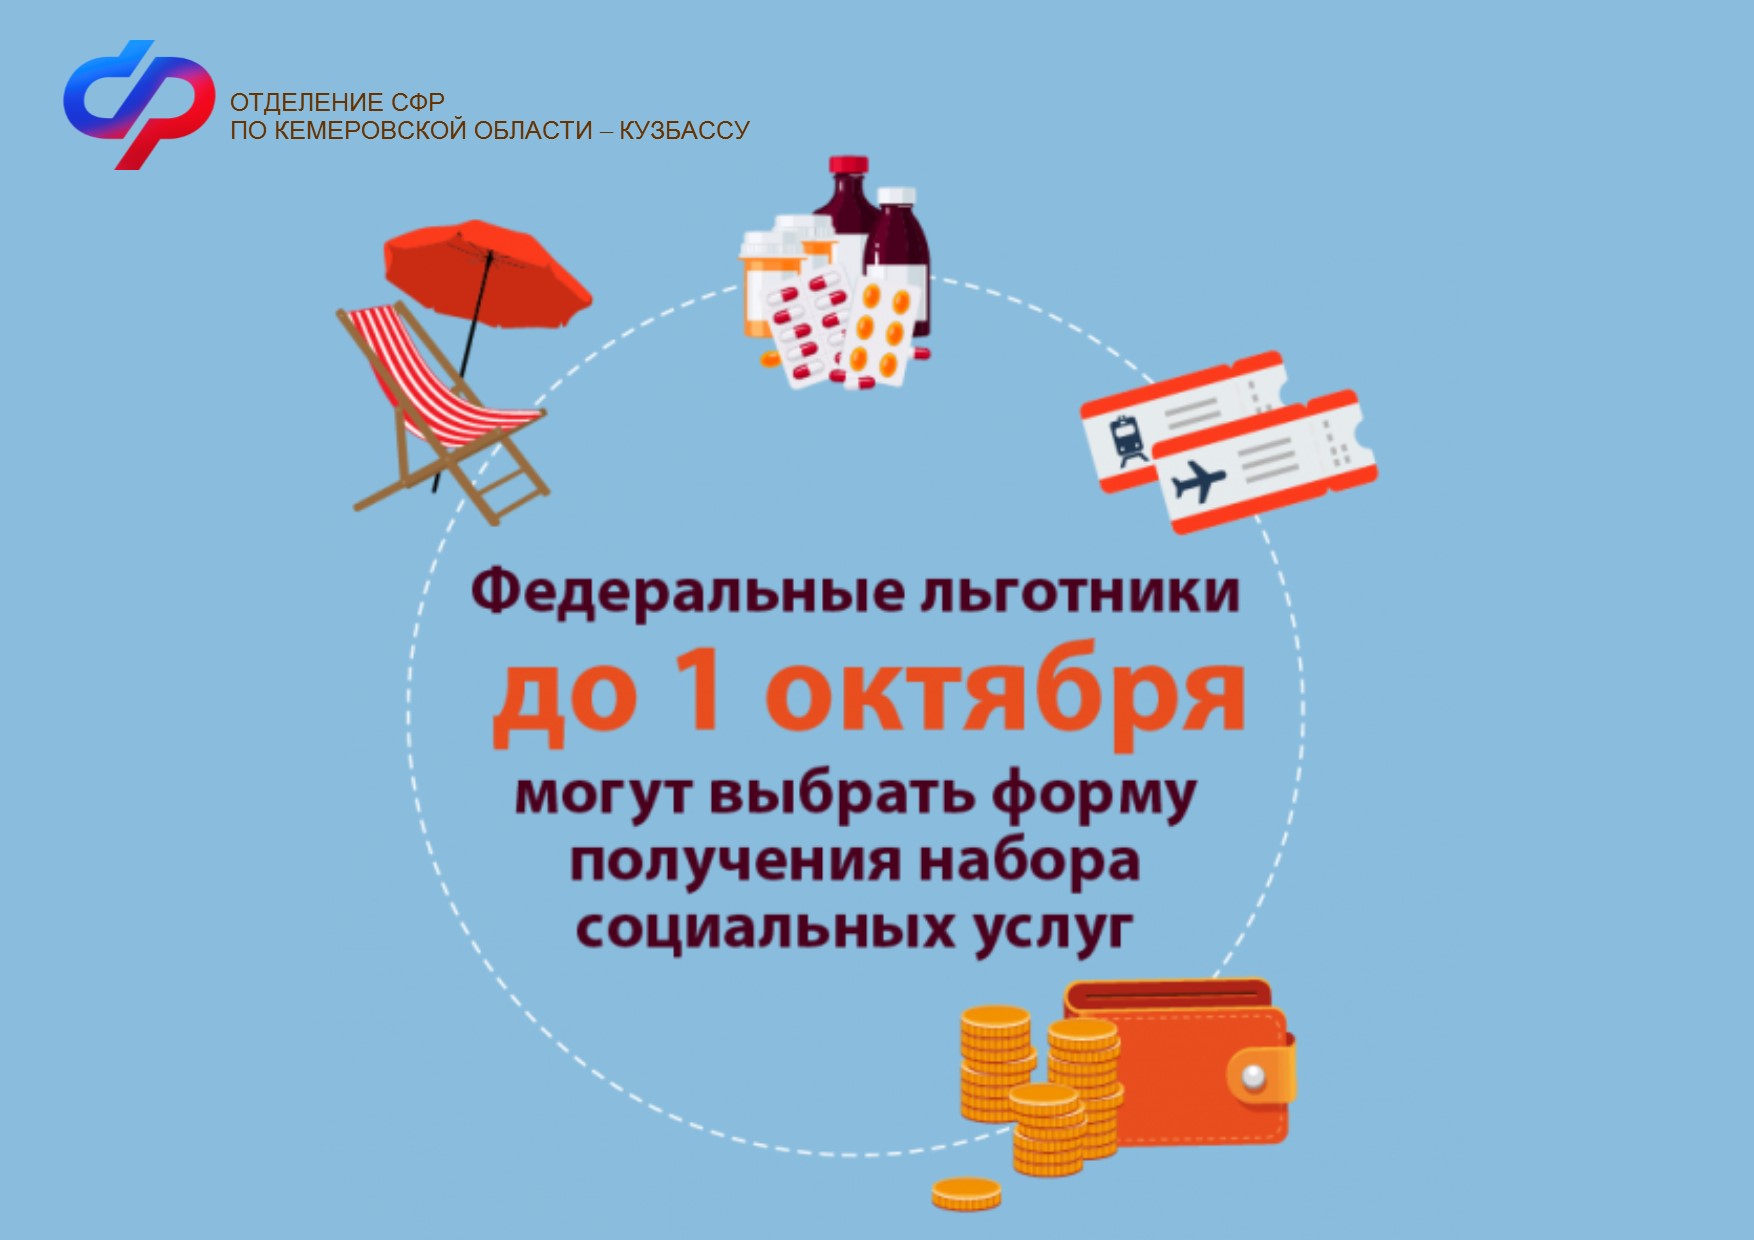 До 1 октября федеральные льготники Кузбасса могут определиться со способом получения набора социальных услуг